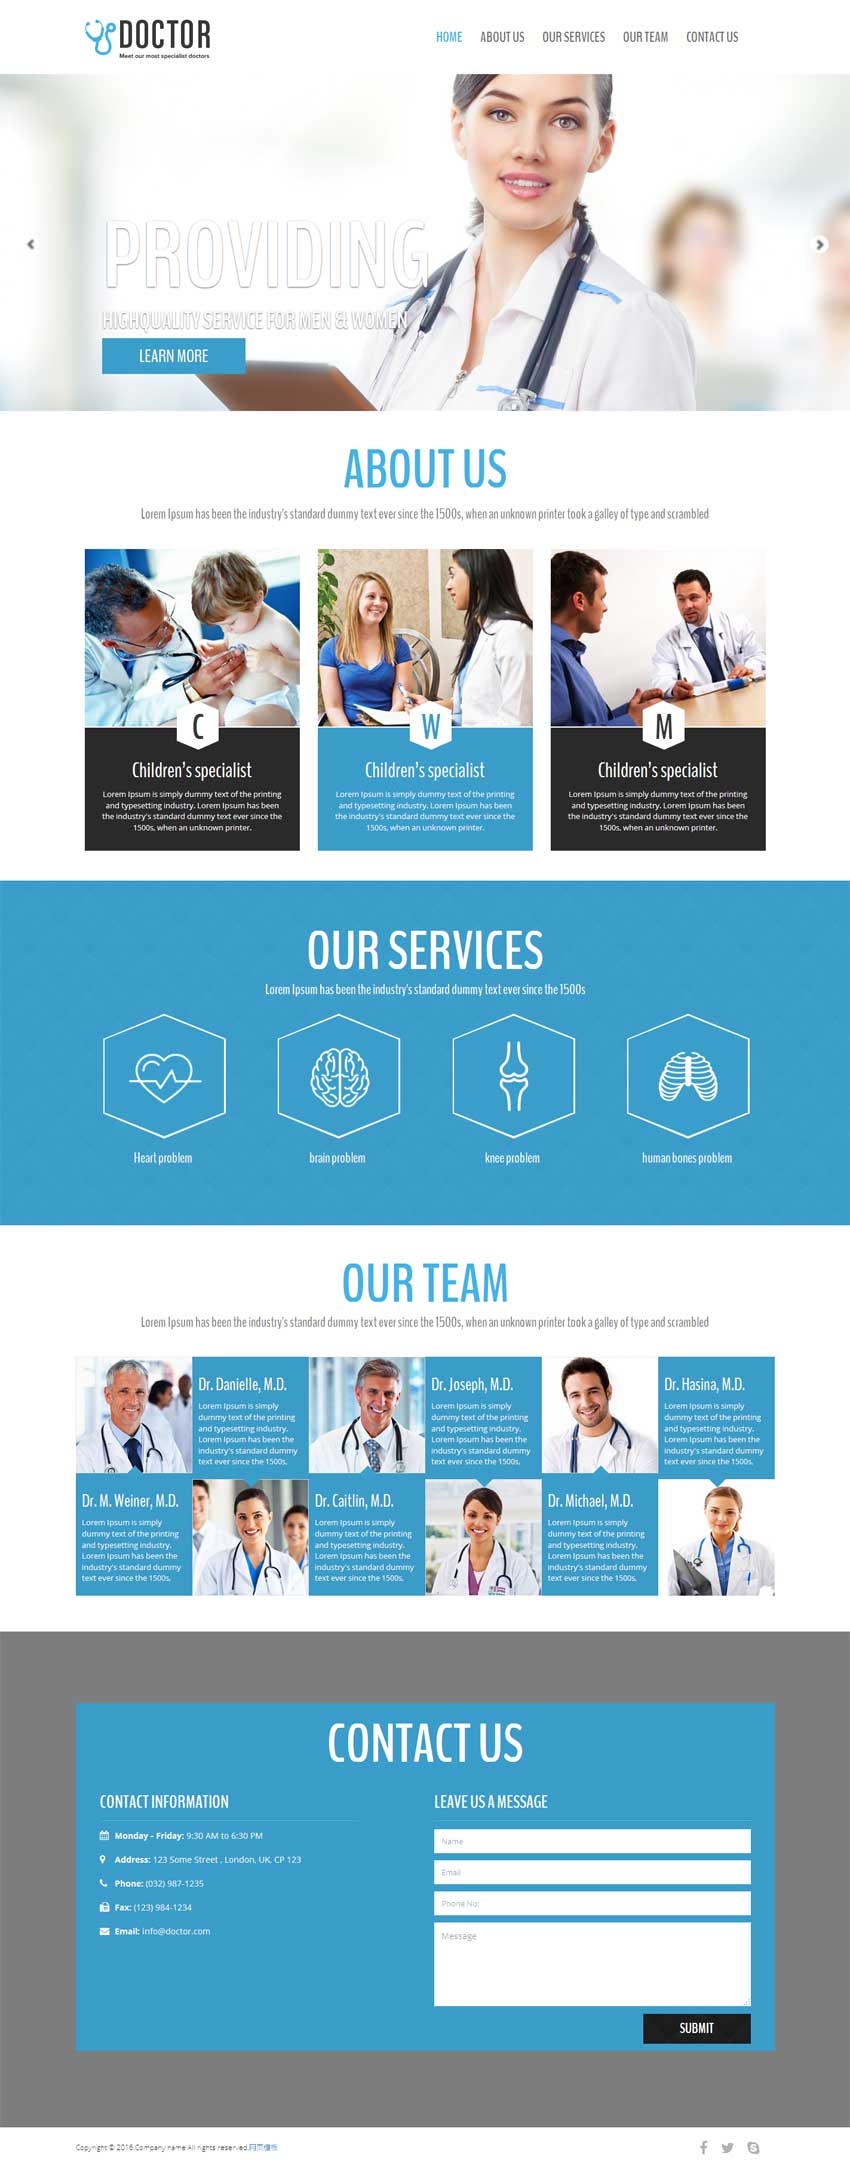 蓝色简洁的医院治疗网站响应式单页模板